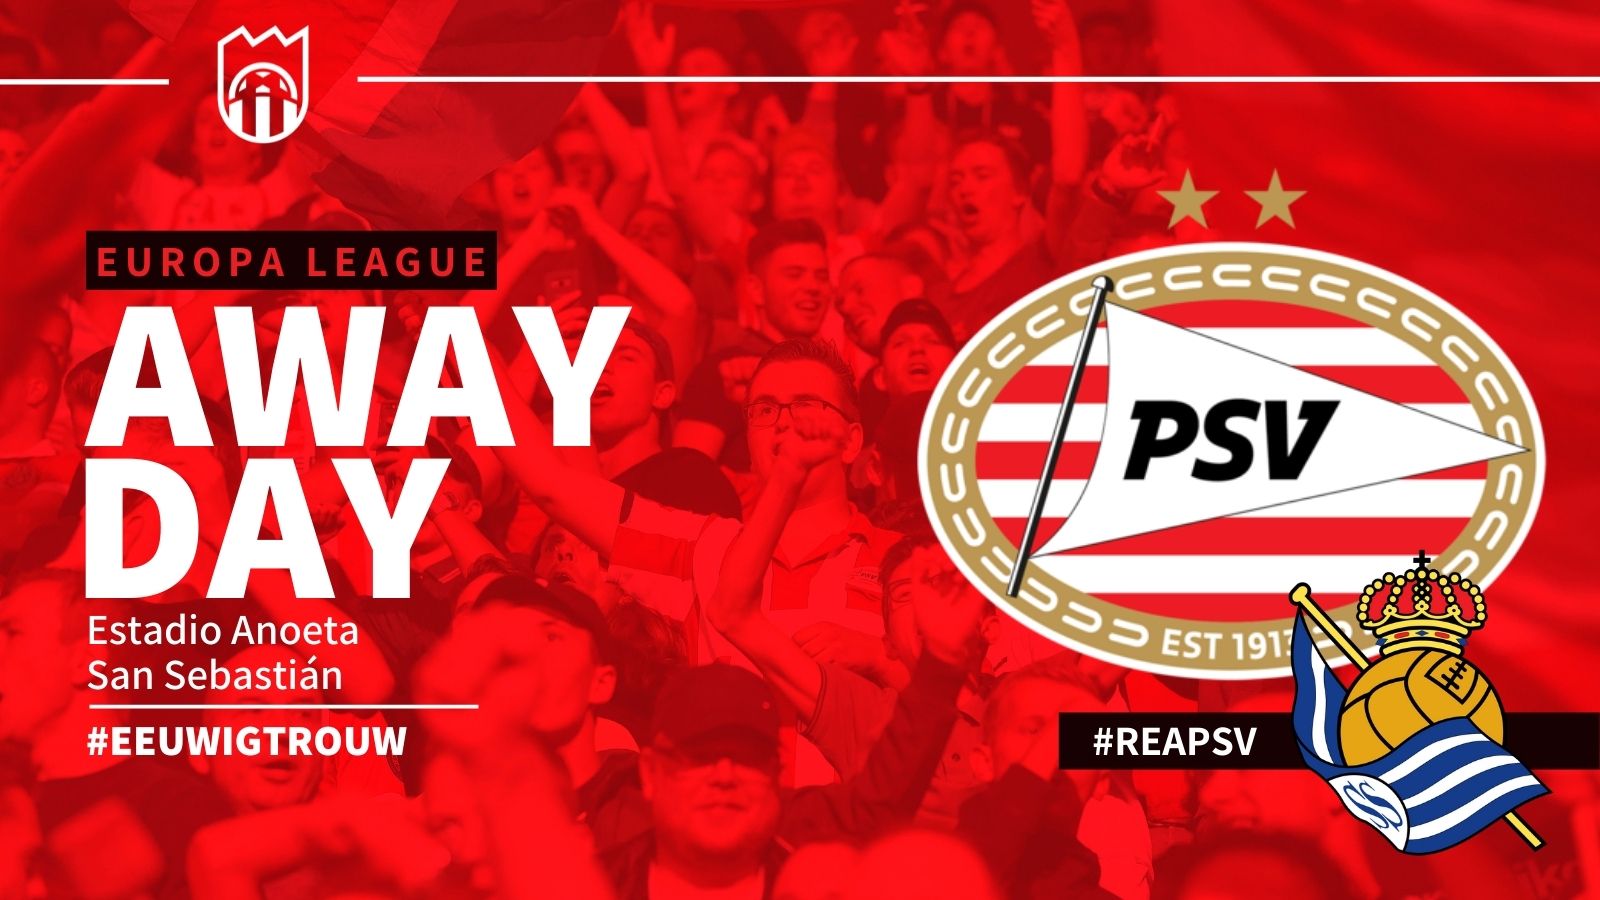 Europa League : Real Sociedad - PSV (3 - 0)